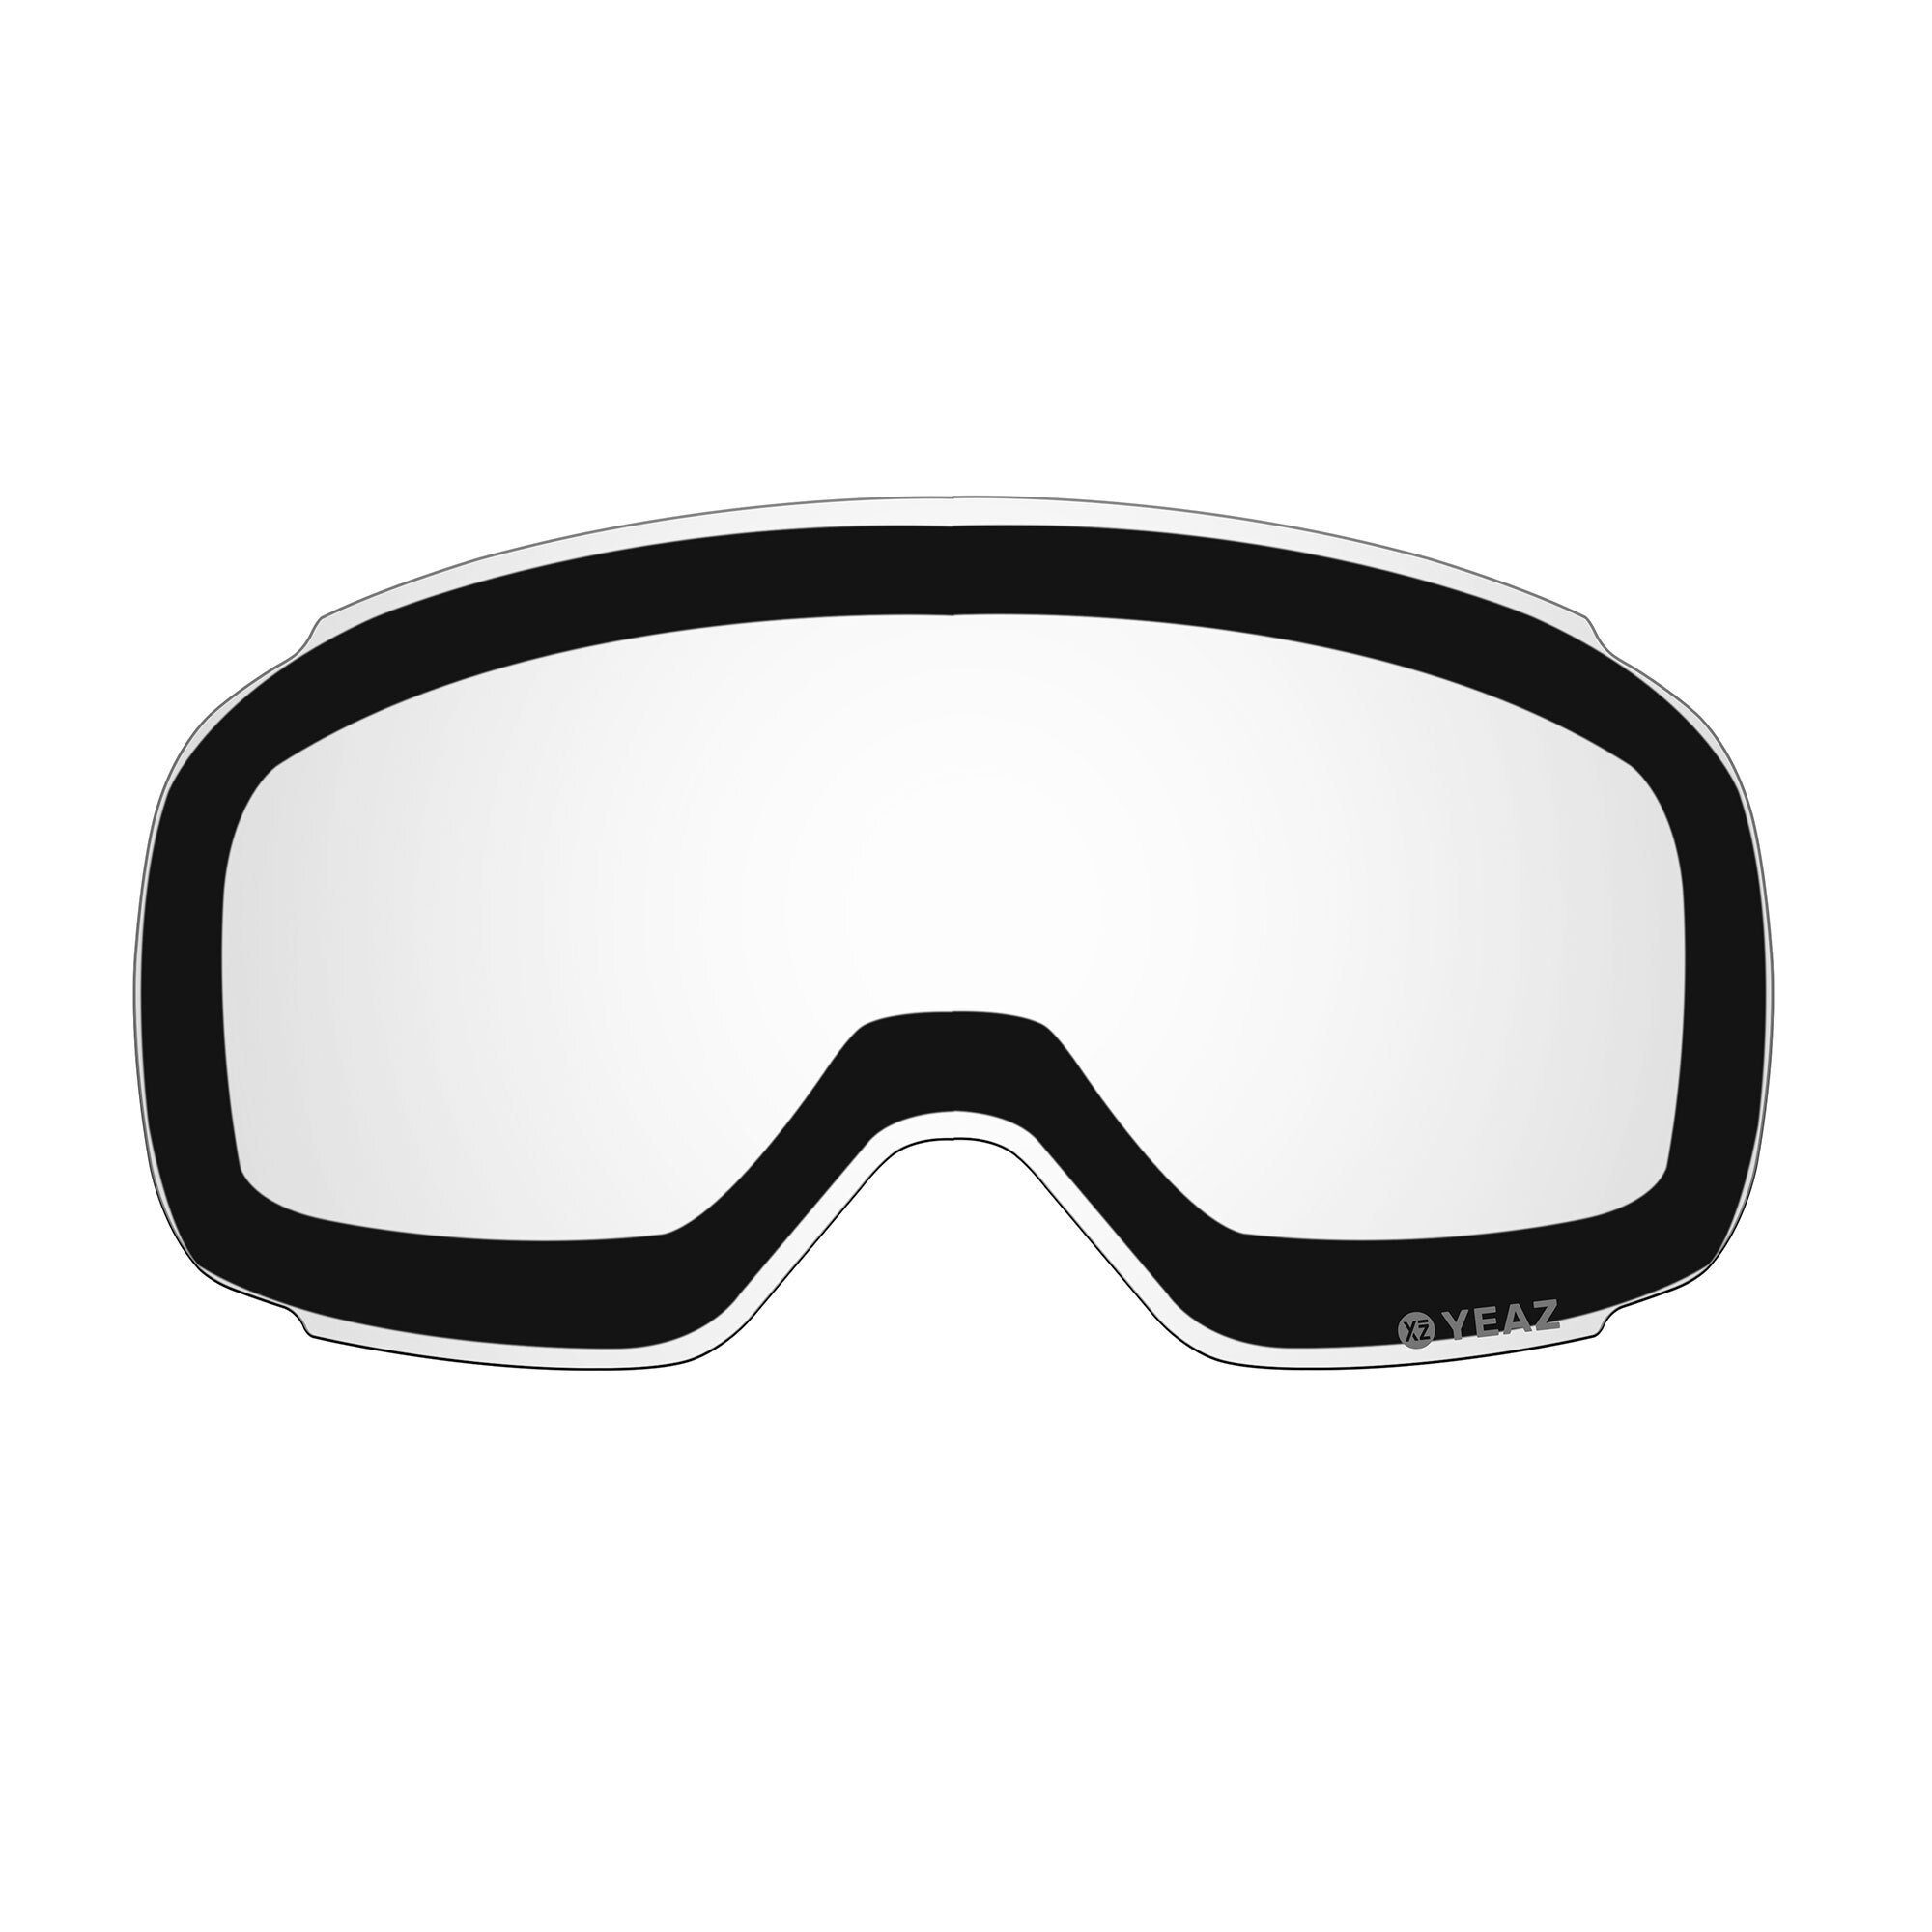 Photochrome Ersatzglas TWEAK-X für Skibrille Skibrille ski- snowboardbrille, TWEAK-X wechselglas für YEAZ